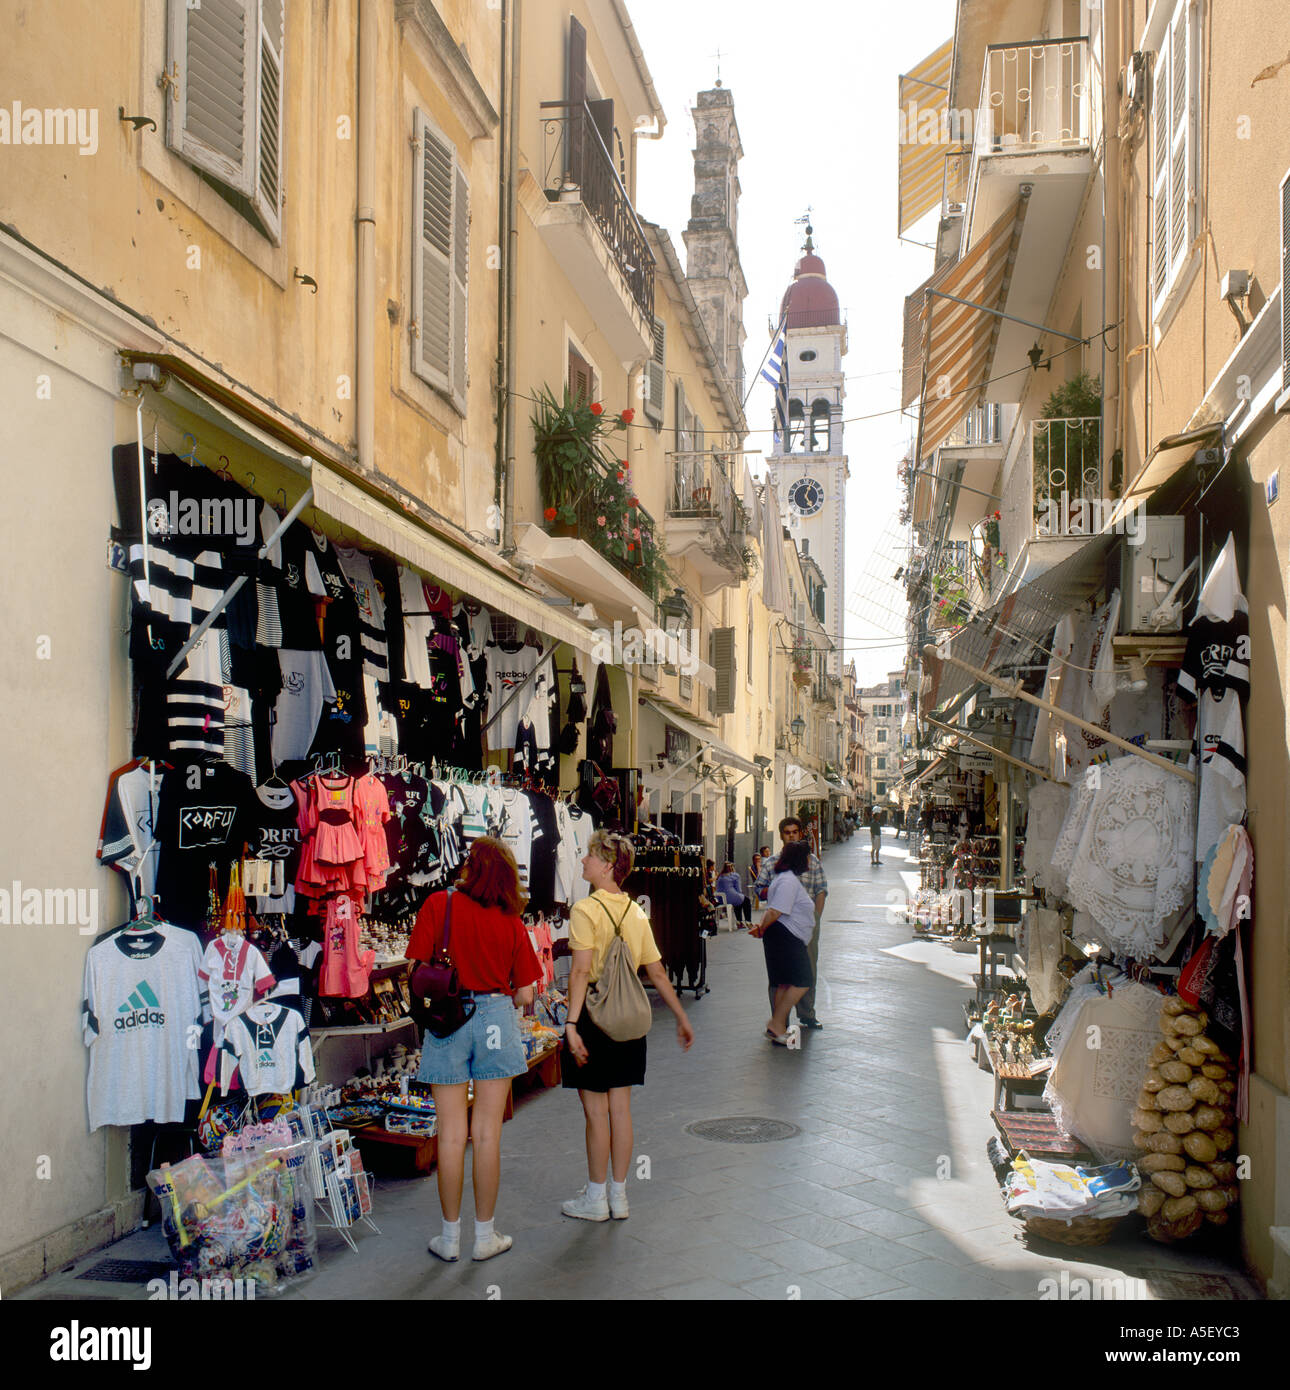 Shops in the Old Town, Corfu Town, Corfu (Kerkyra), Ionian Islands, Greece  Stock Photo - Alamy